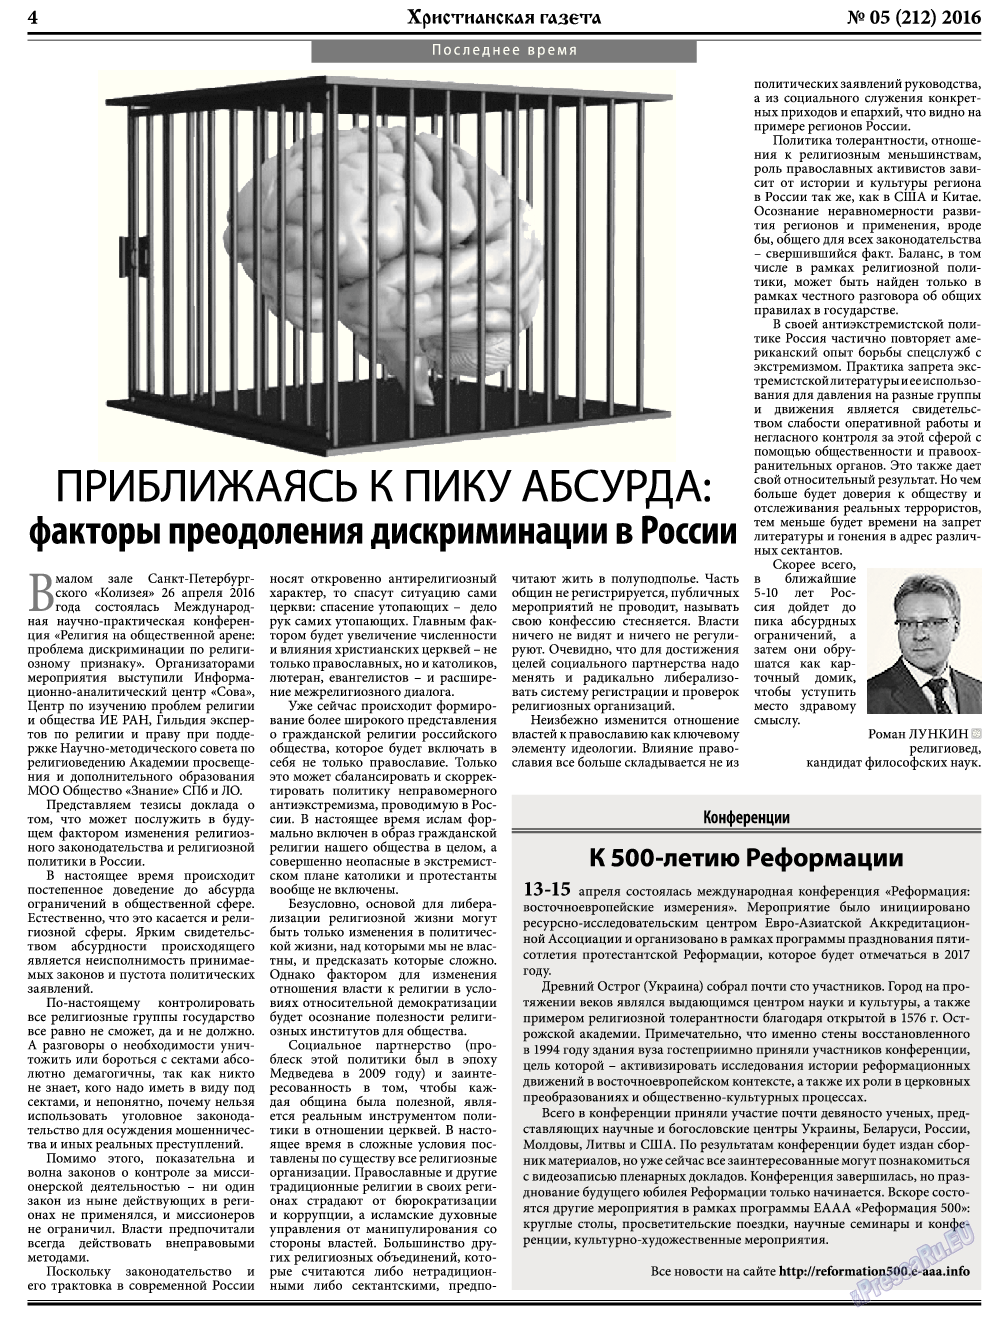 Христианская газета, газета. 2016 №5 стр.4